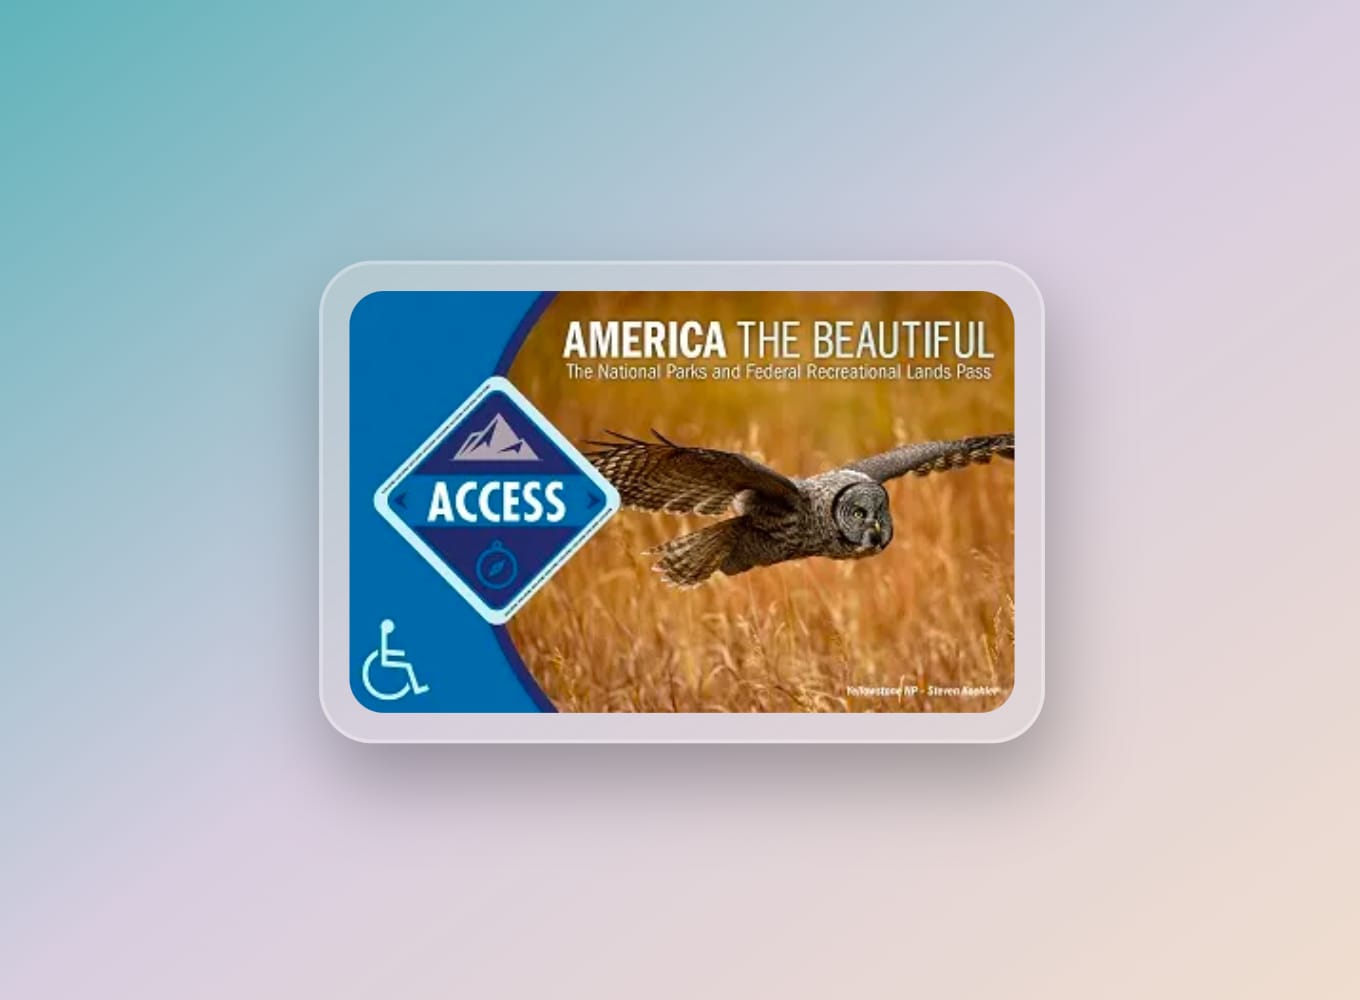 Toegang voor gehandicapten Amerika de prachtige nationale parken Pas